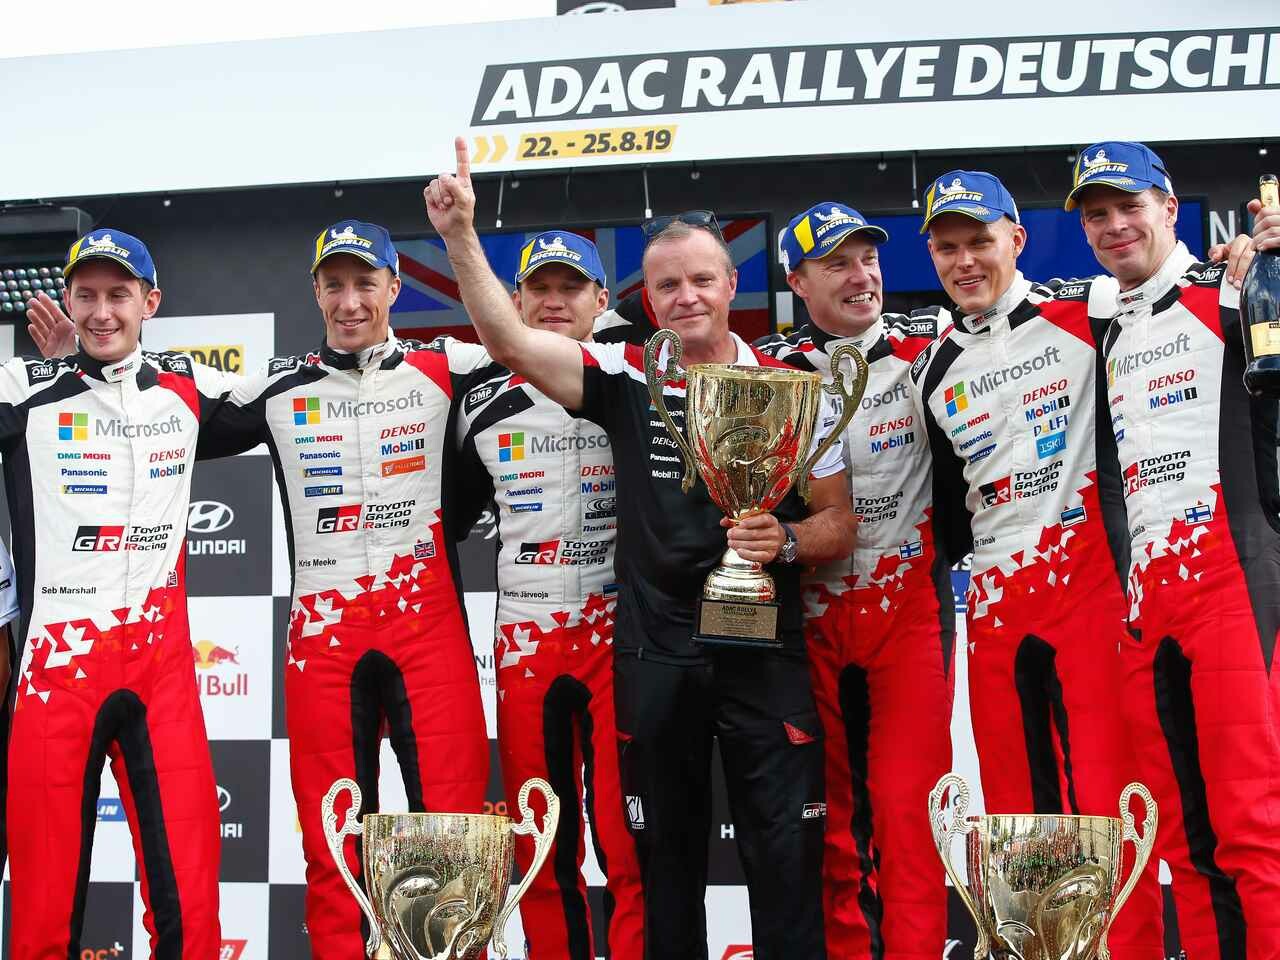 WRC第10戦ラリー ドイチェランド、トヨタ ヤリスが1-2-3、表彰台を独占する歴史的勝利【モータースポーツ】